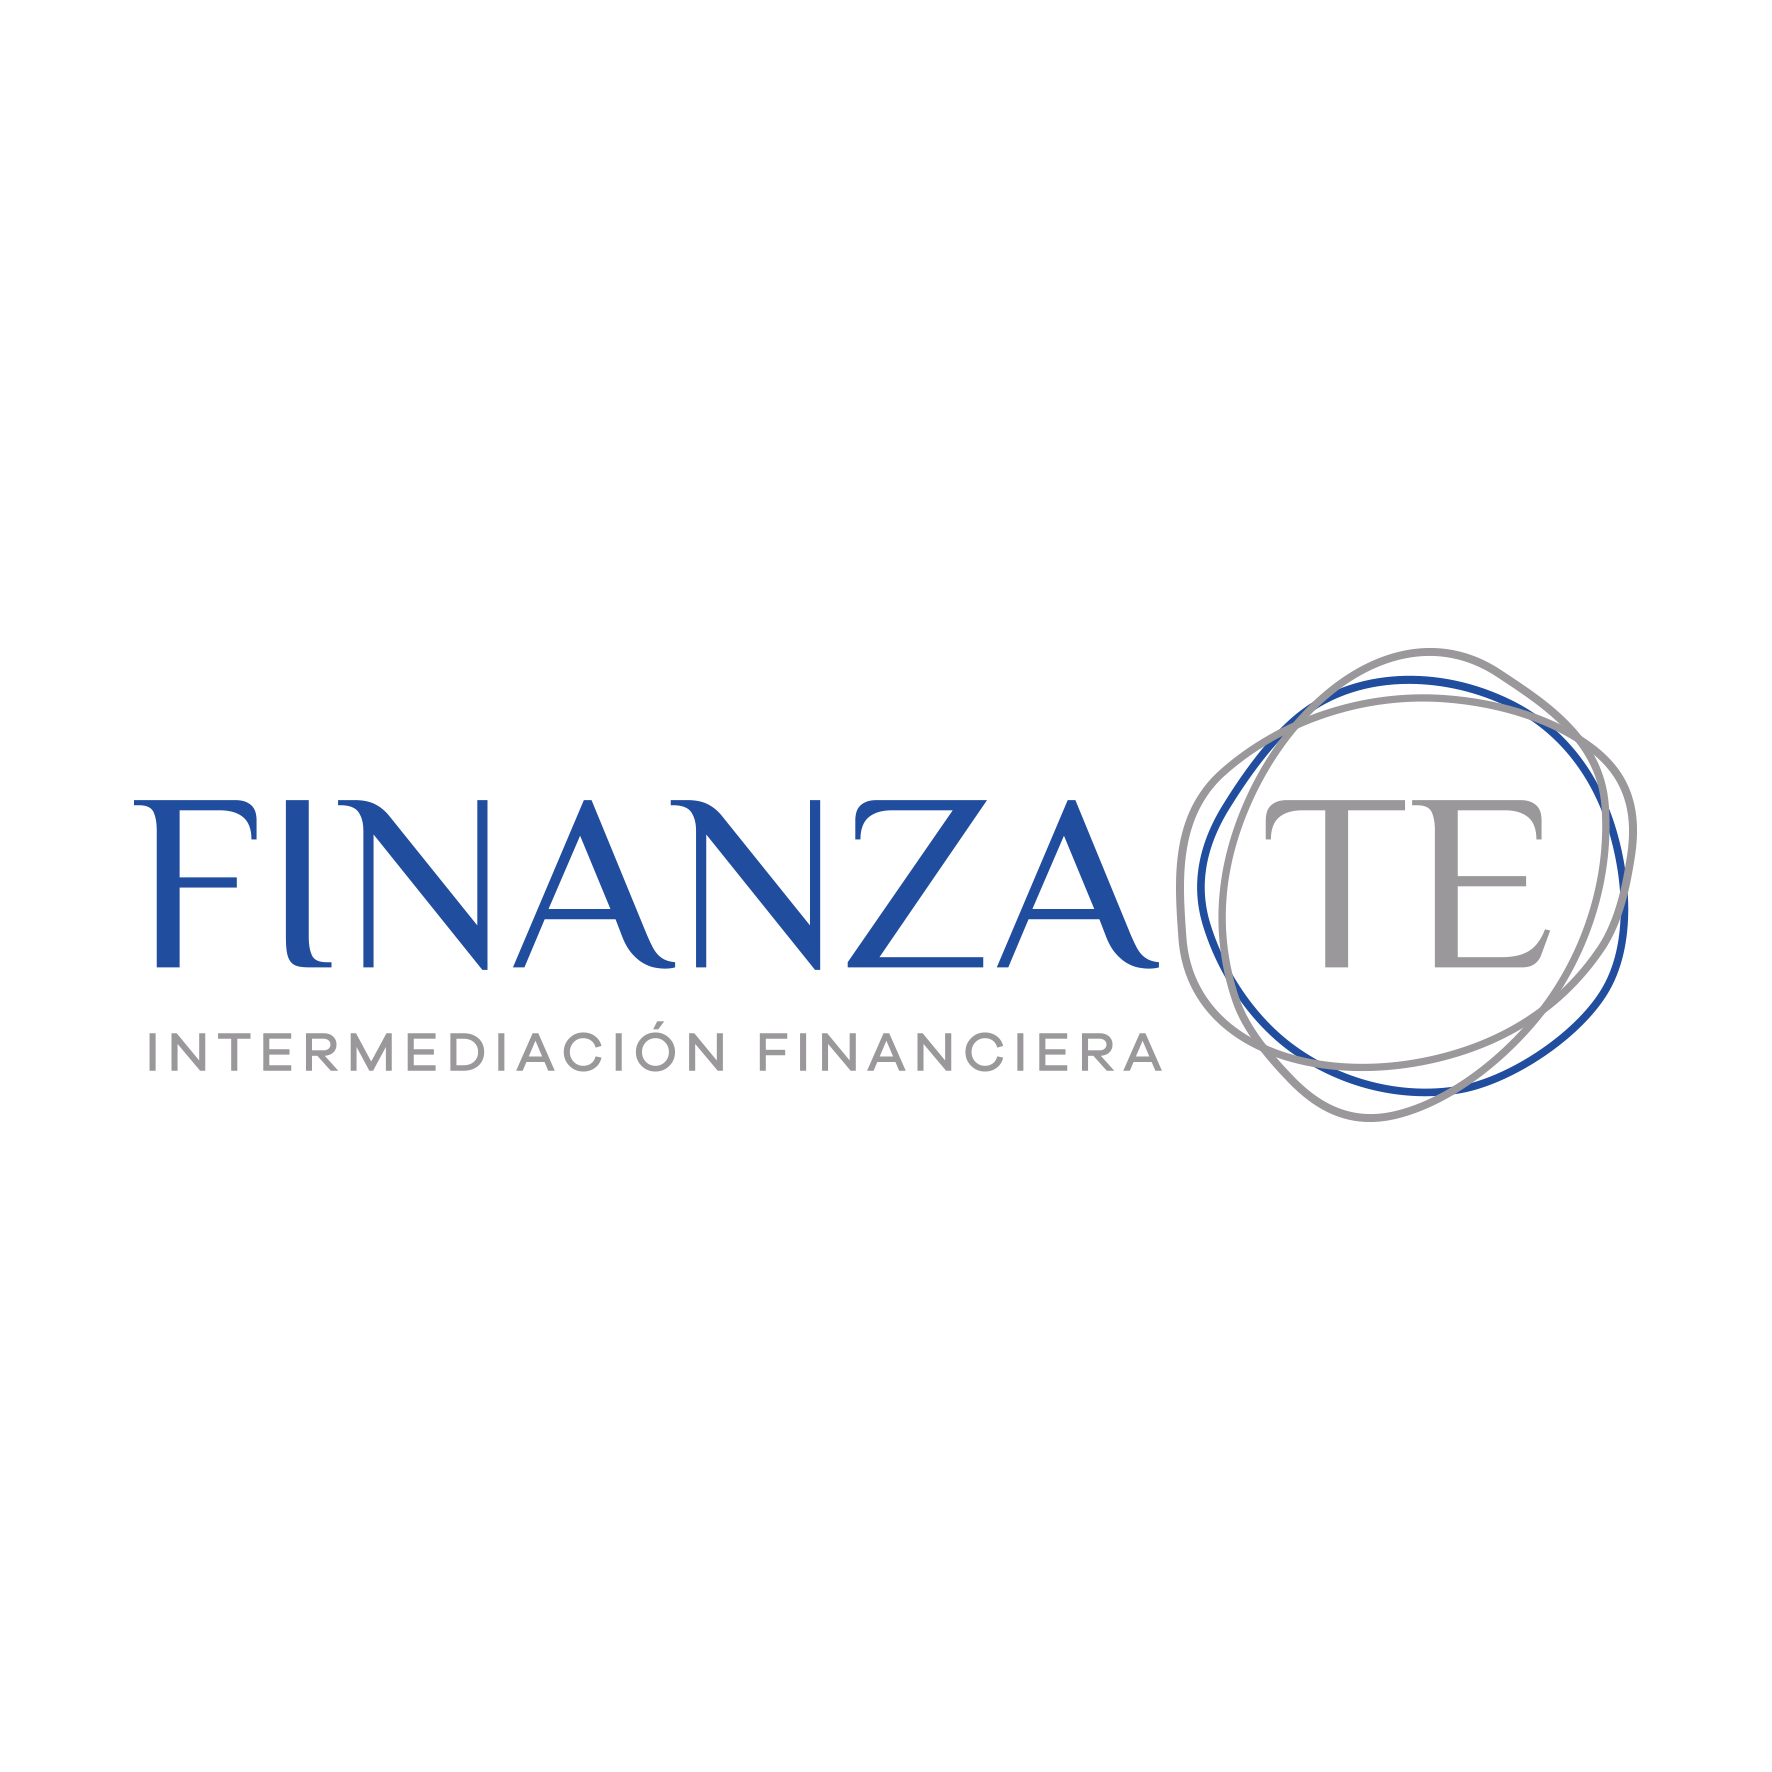 Finanzate Logo